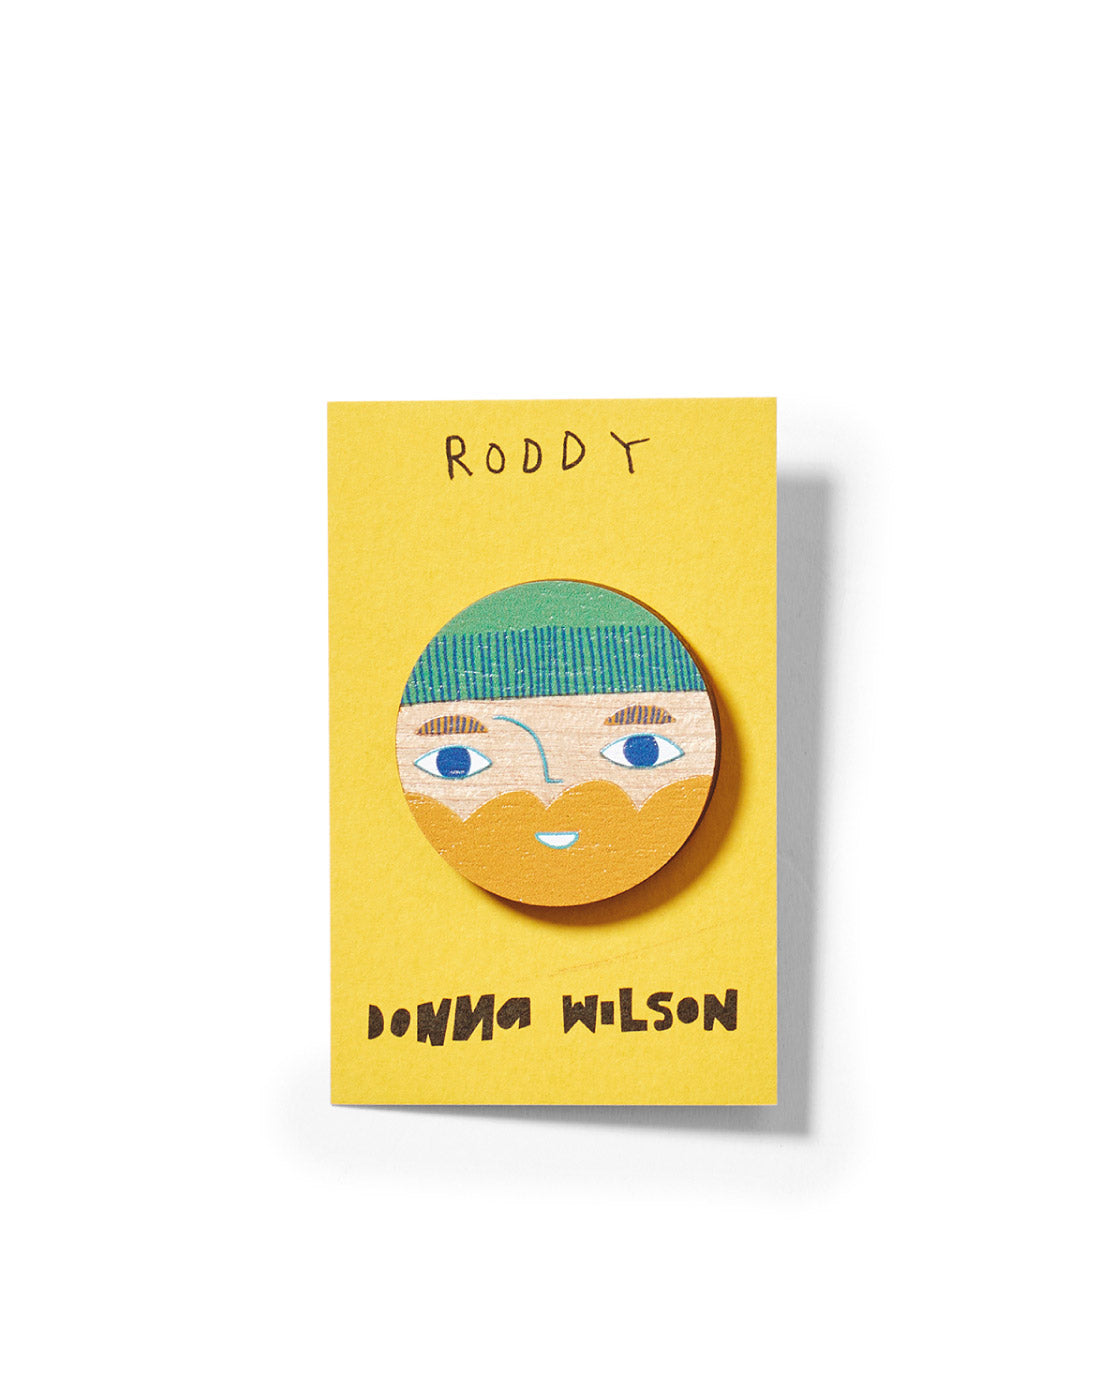 Roddy Badge by Donna Wilson